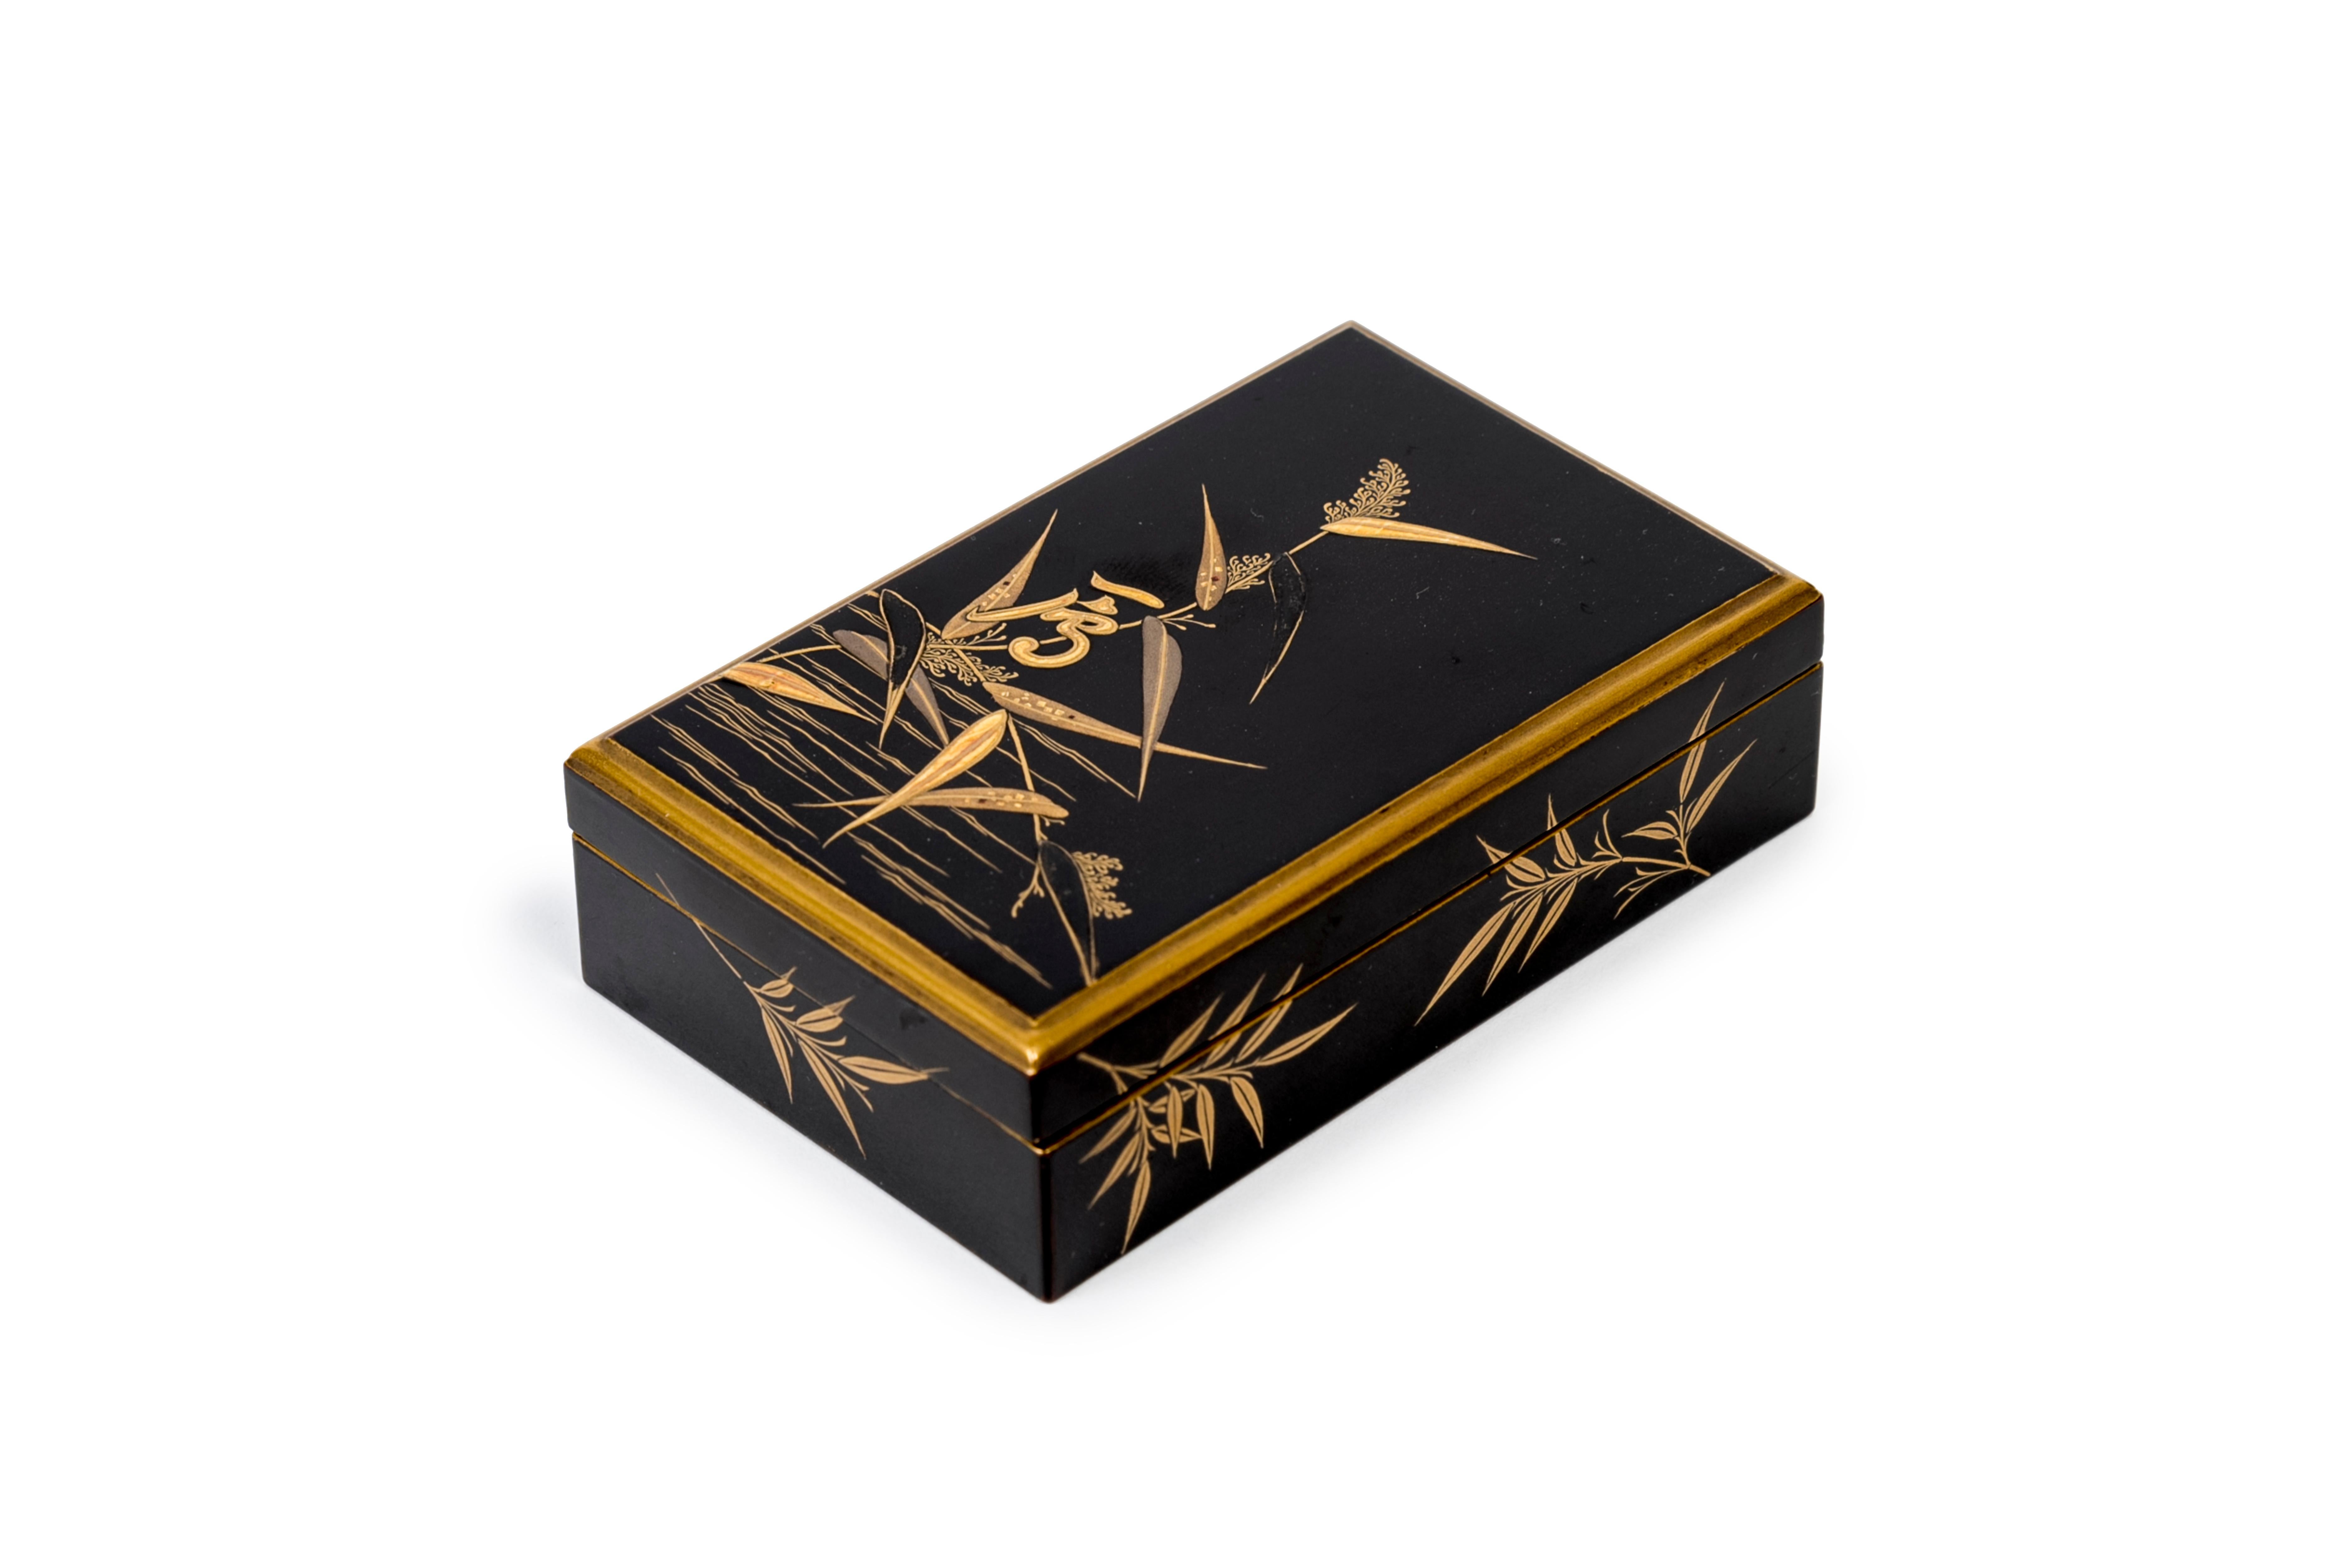 Minuscule suzuribako (écritoire) en laque hiramaki-e noire et dorée avec décor de plantain d'eau (Alisma plantago-acquatica). Intérieur en laque nashi-ji, avec un gobelet d'eau rectangulaire et un pinceau rétractable. 

Japon - ère Meiji